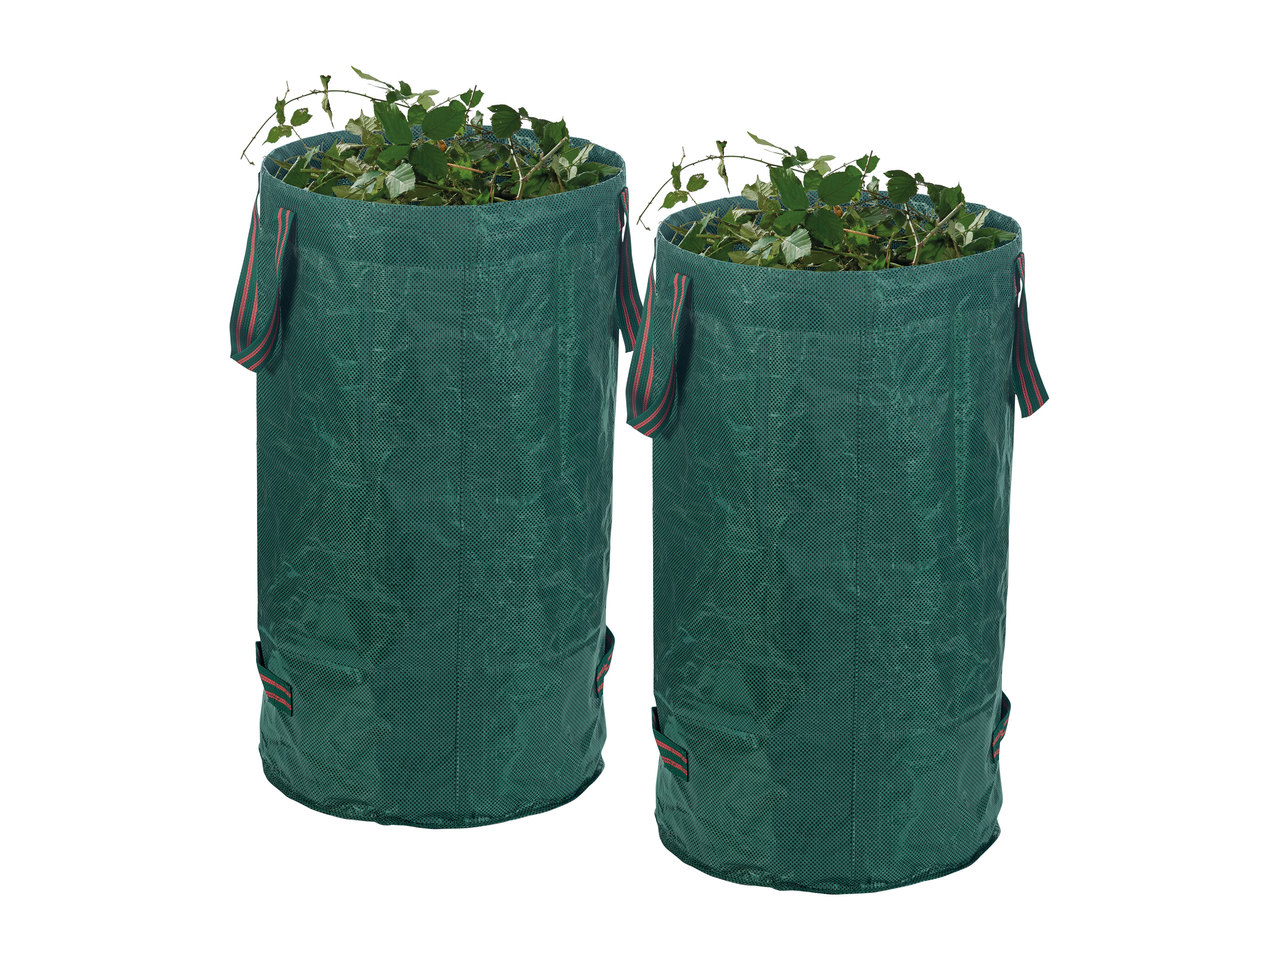 Florabest Garden Waste Bags1